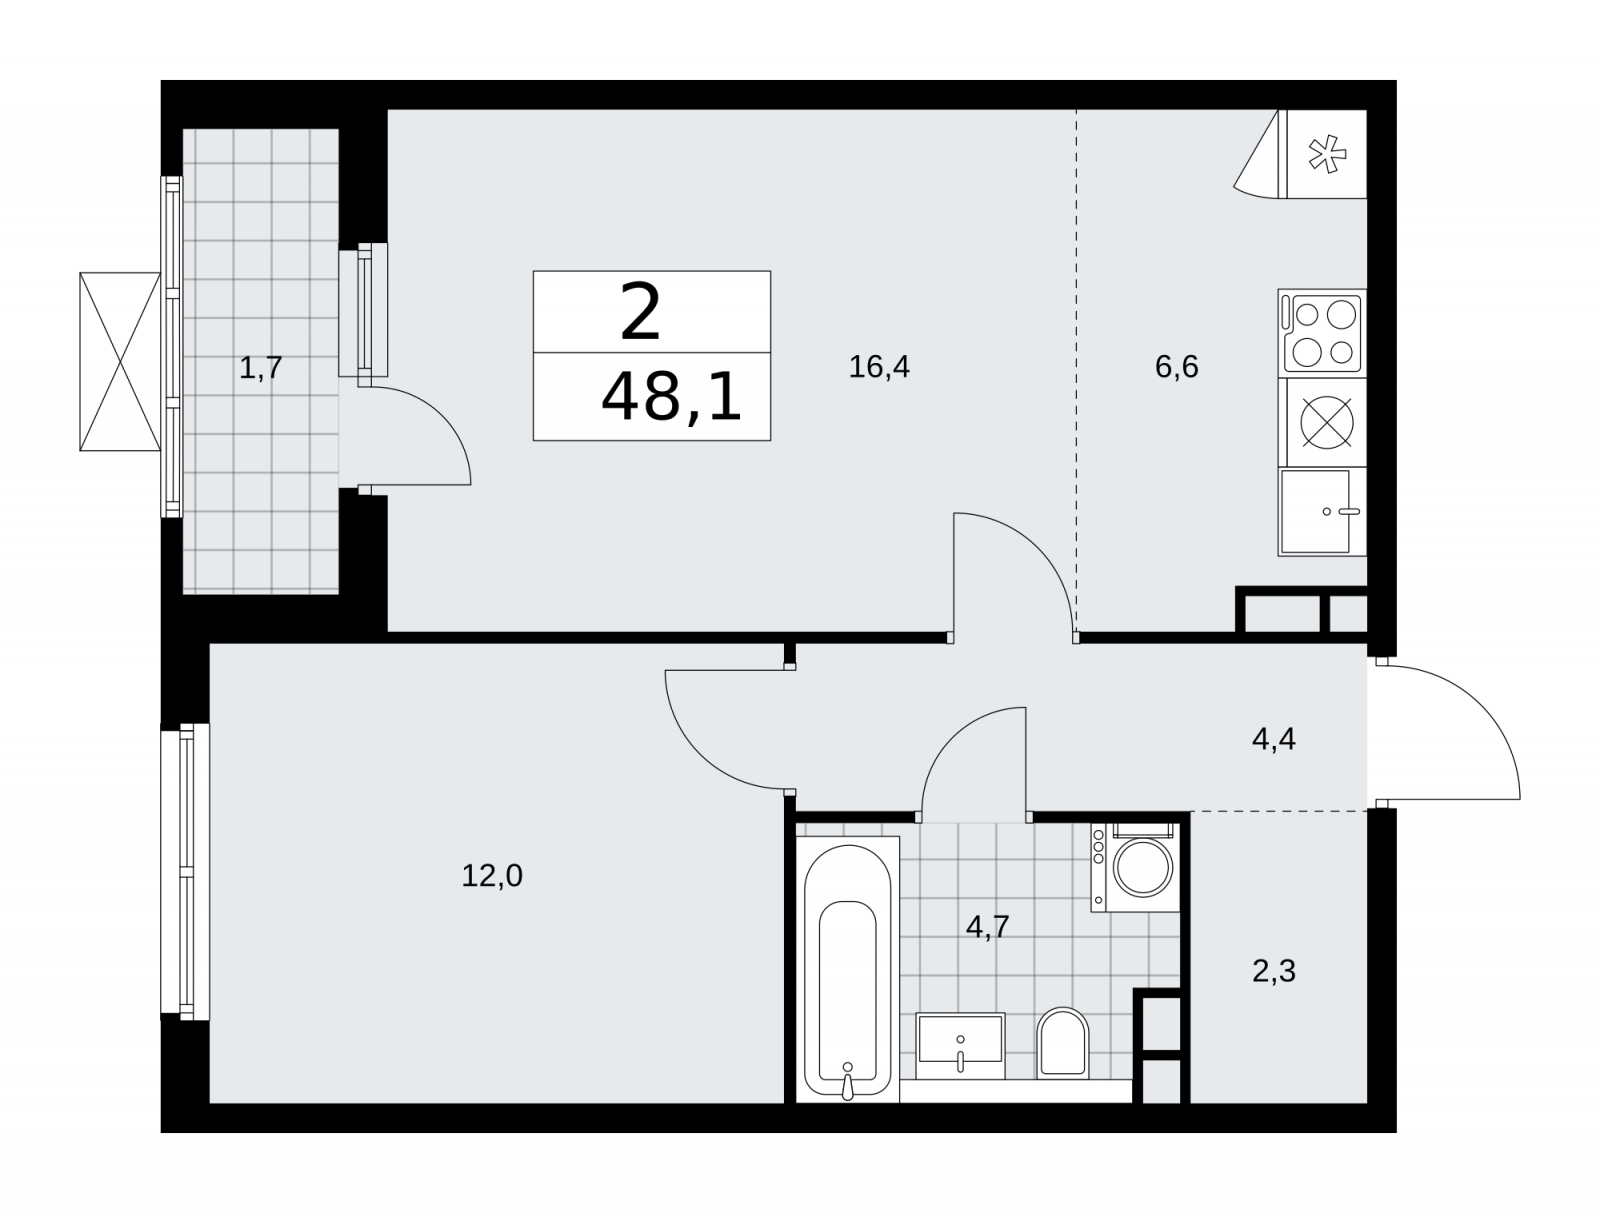 Продается двухкомнатная квартира с европланировкой в новом жилом комплексе, рядом с метро